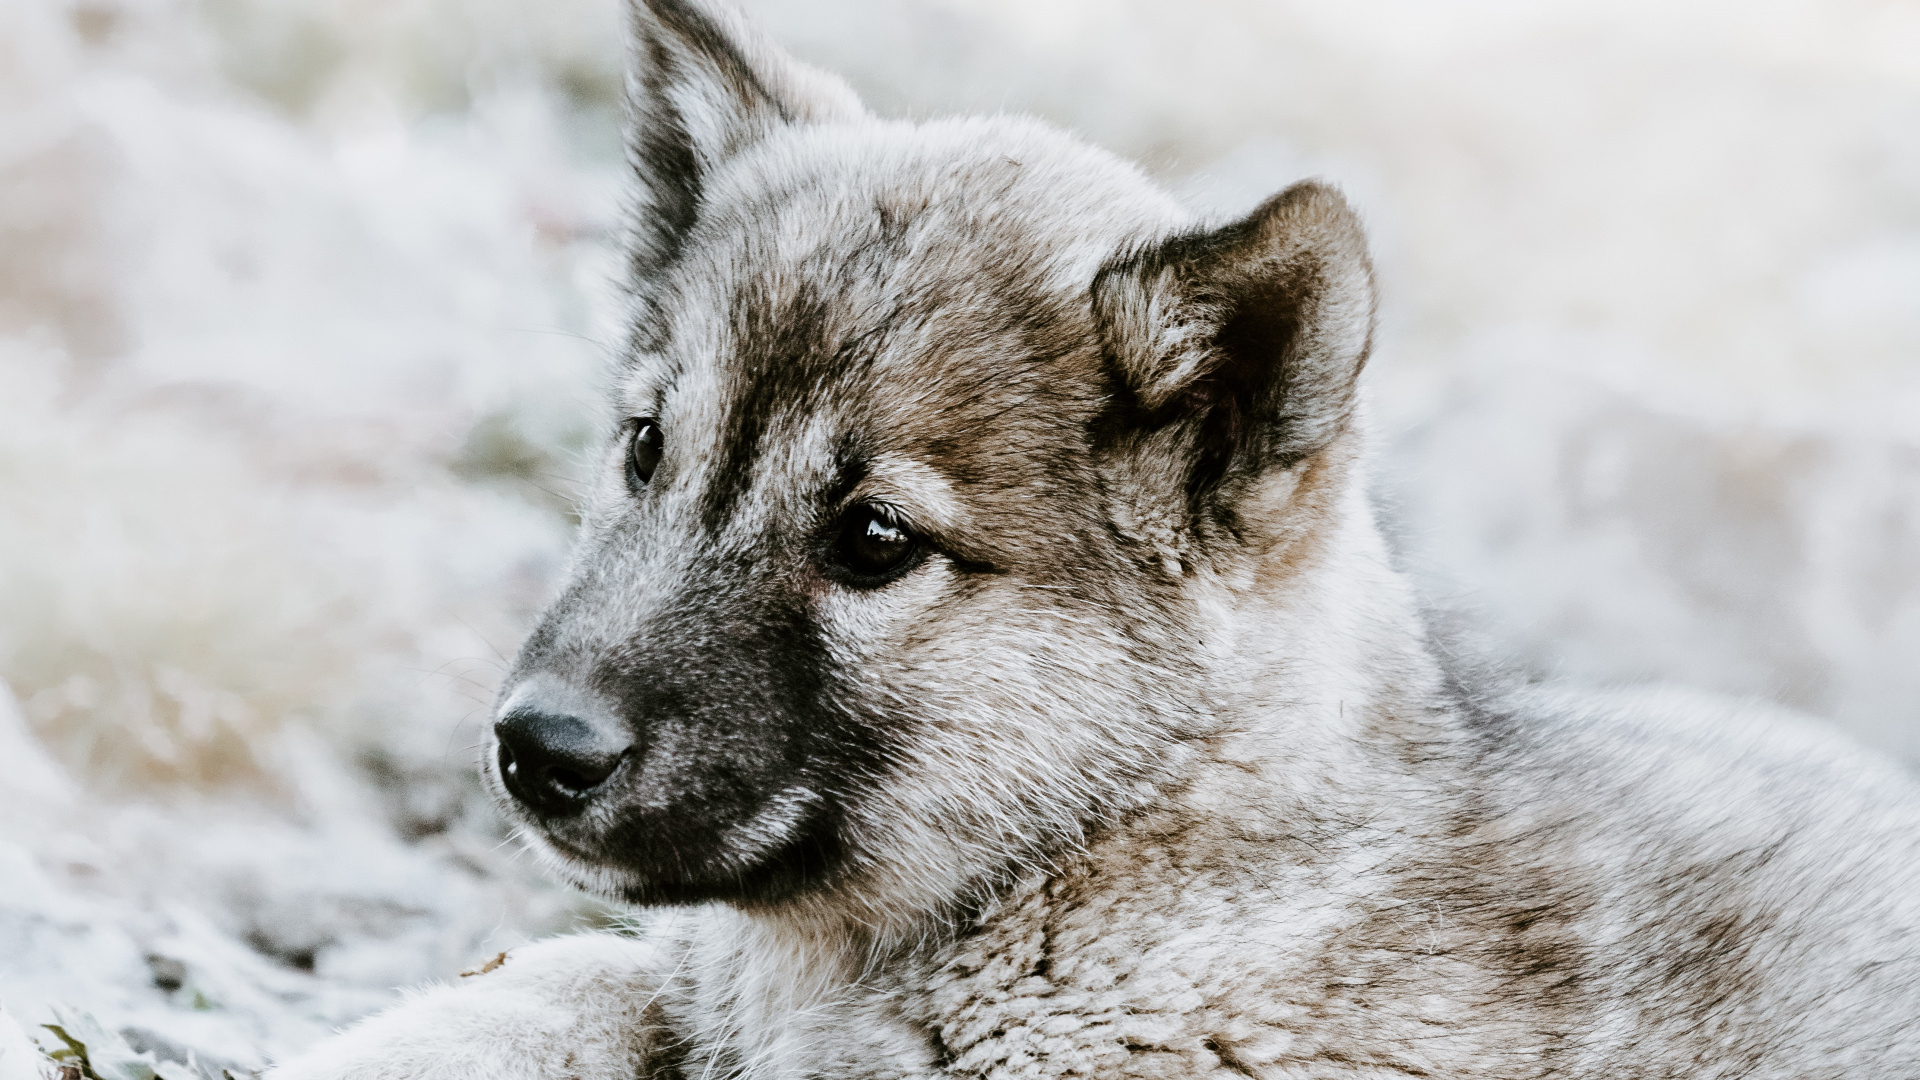 捷克斯洛伐克那只狼狗, 小狗, 挪威elkhound, 那只狼狗, 野生动物 壁纸 1920x1080 允许